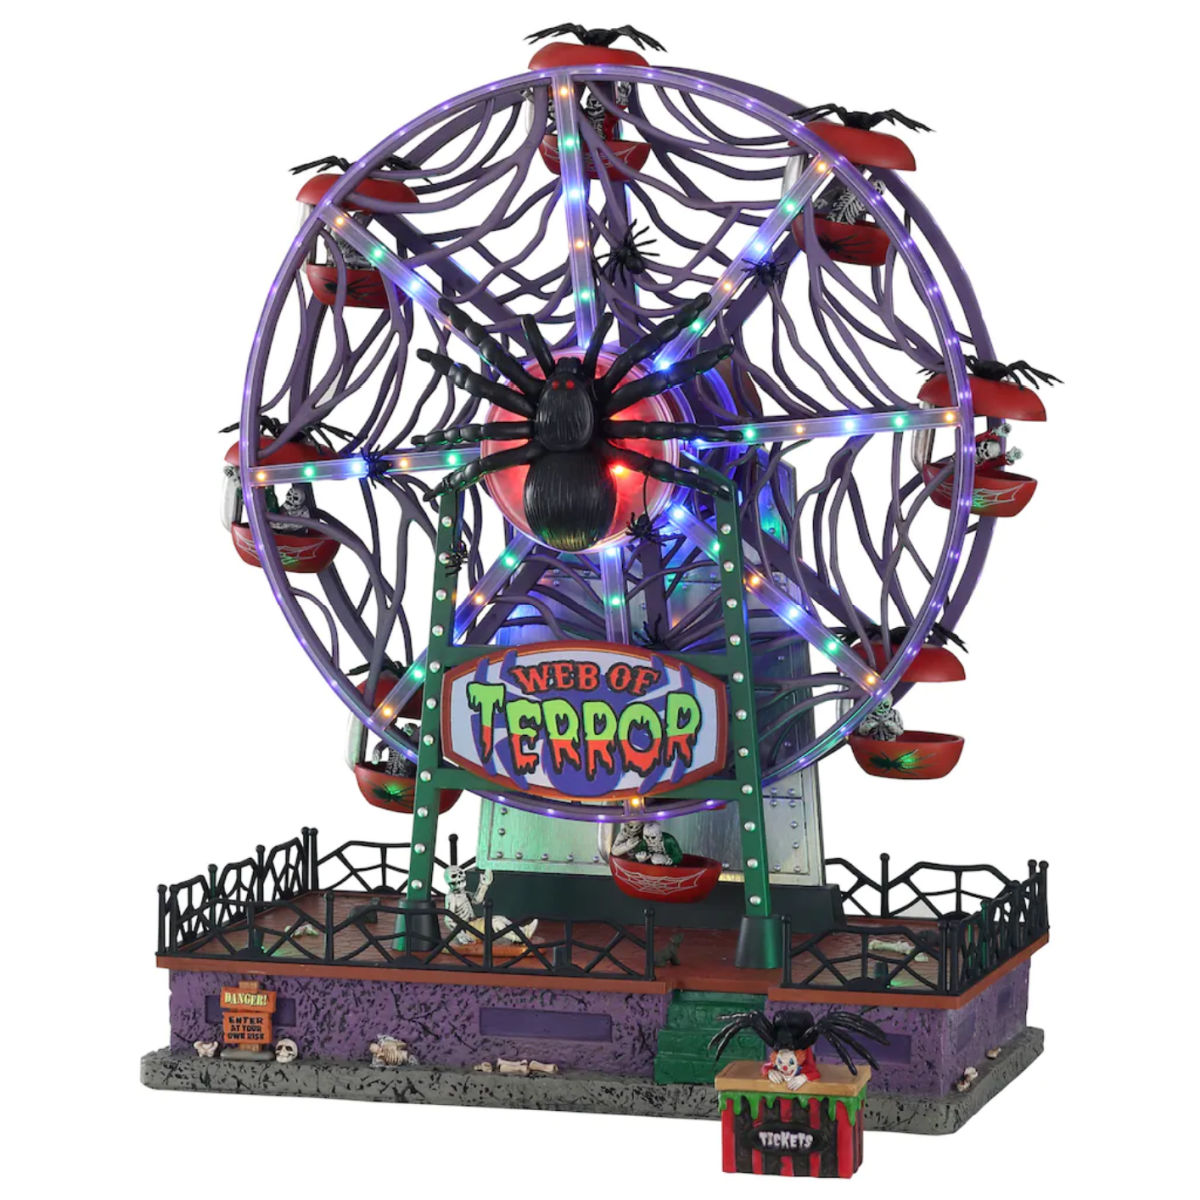 Lemax Spooky Town Web of Terror Ferris Wheel